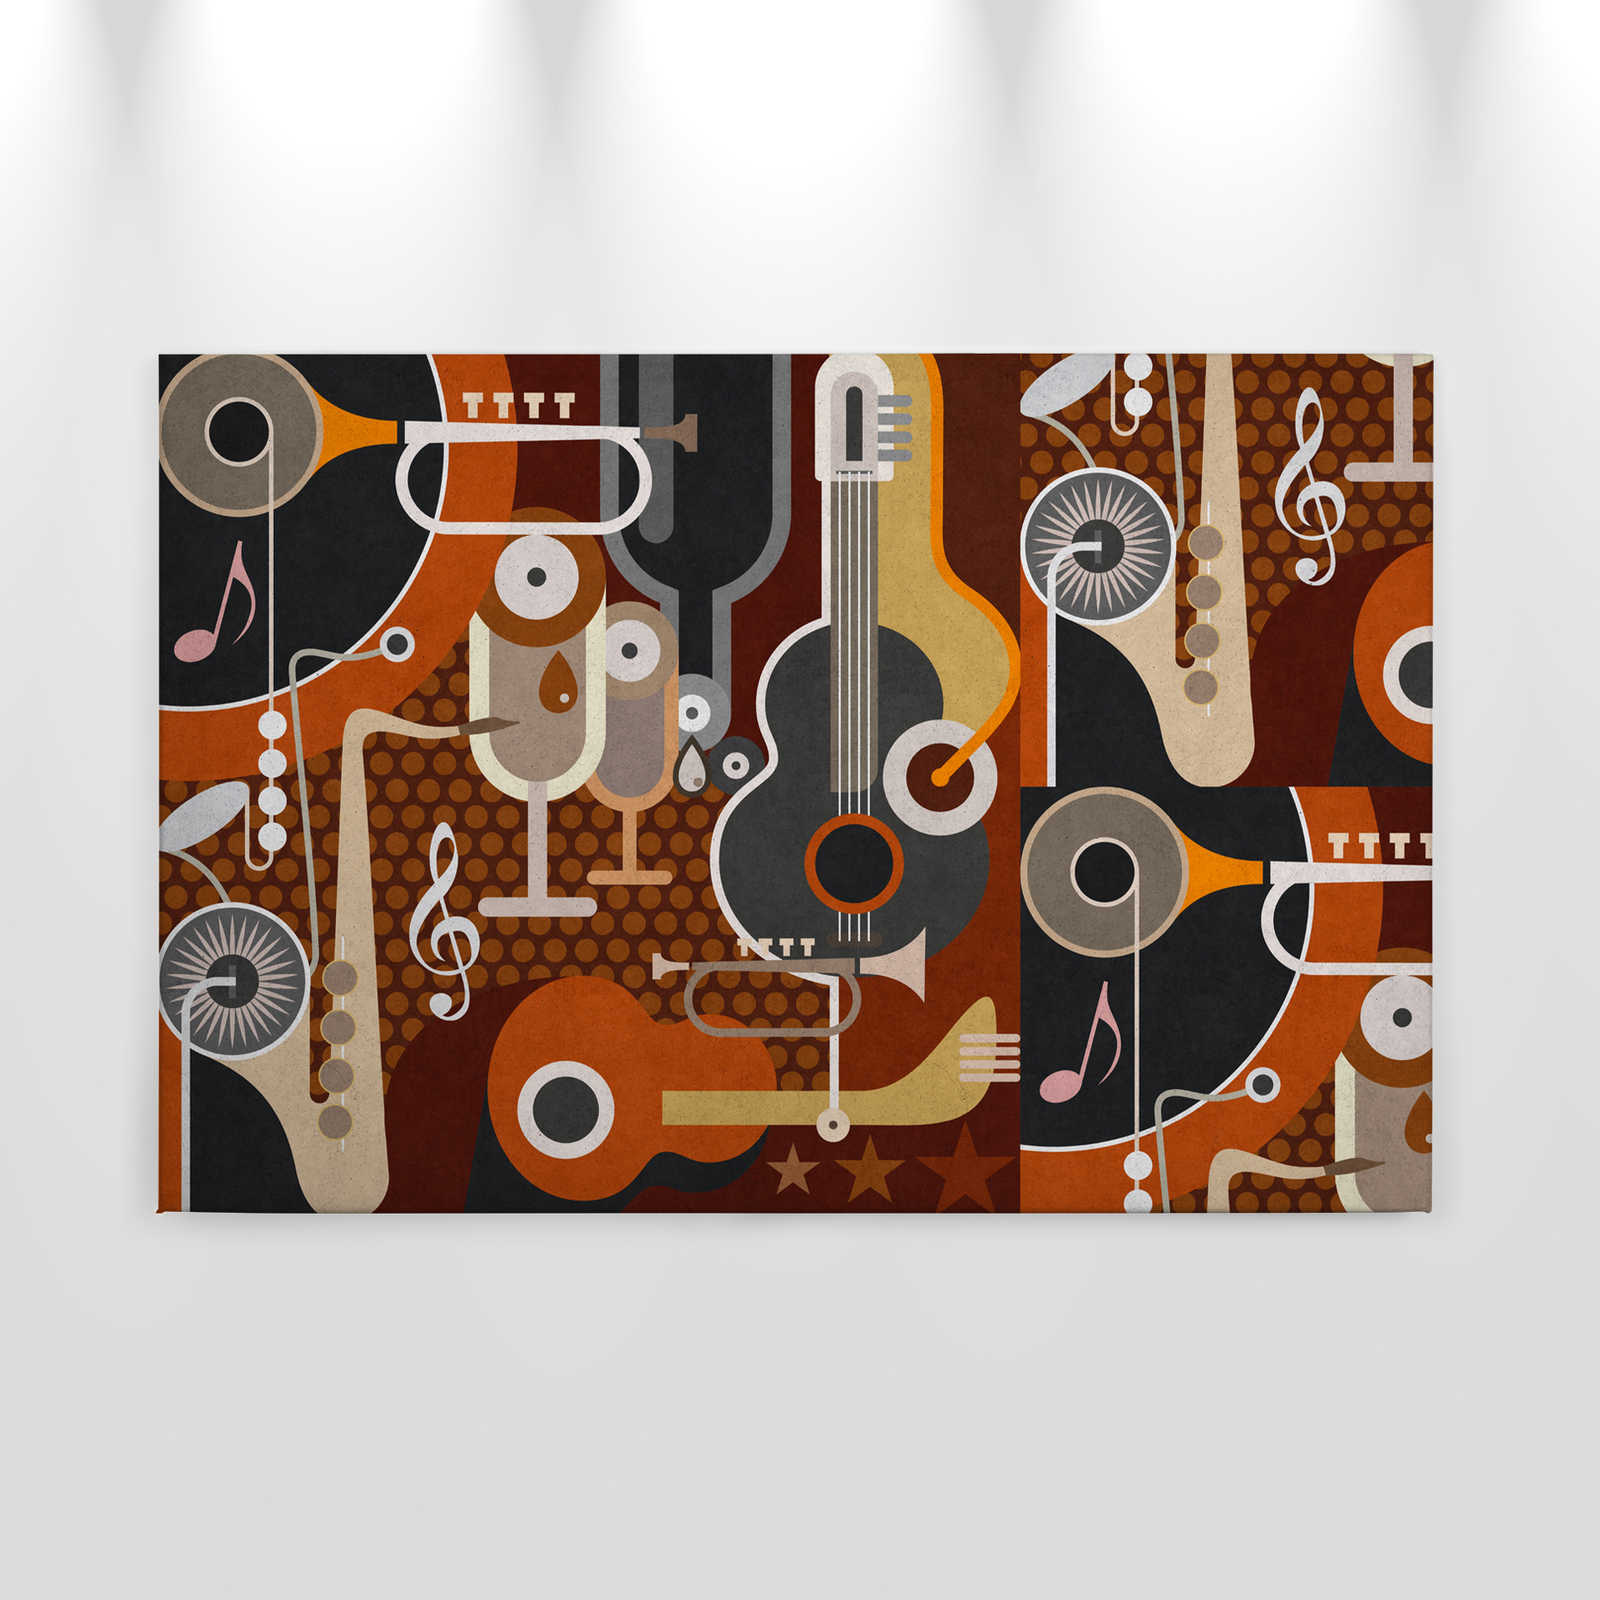             Wall of sound 1 - Quadro su tela in struttura concreta, strumenti musicali astratti - 0,90 m x 0,60 m
        